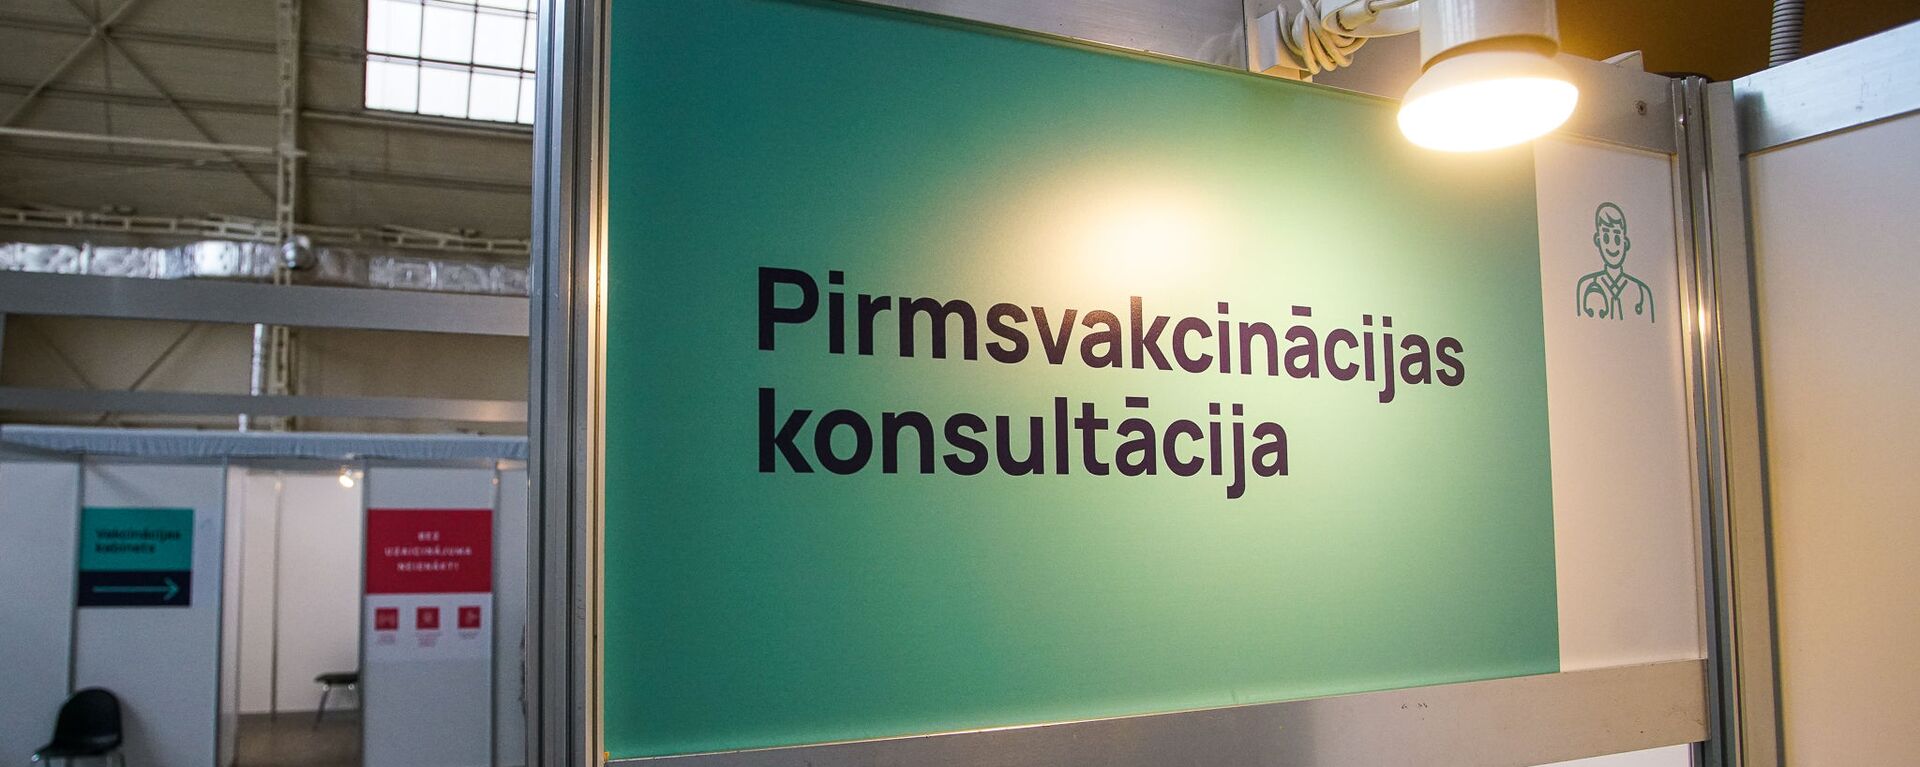 Центр вакцинации открылся в Гастрономическом павильоне Центрального рынка в Риге - Sputnik Латвия, 1920, 02.04.2021